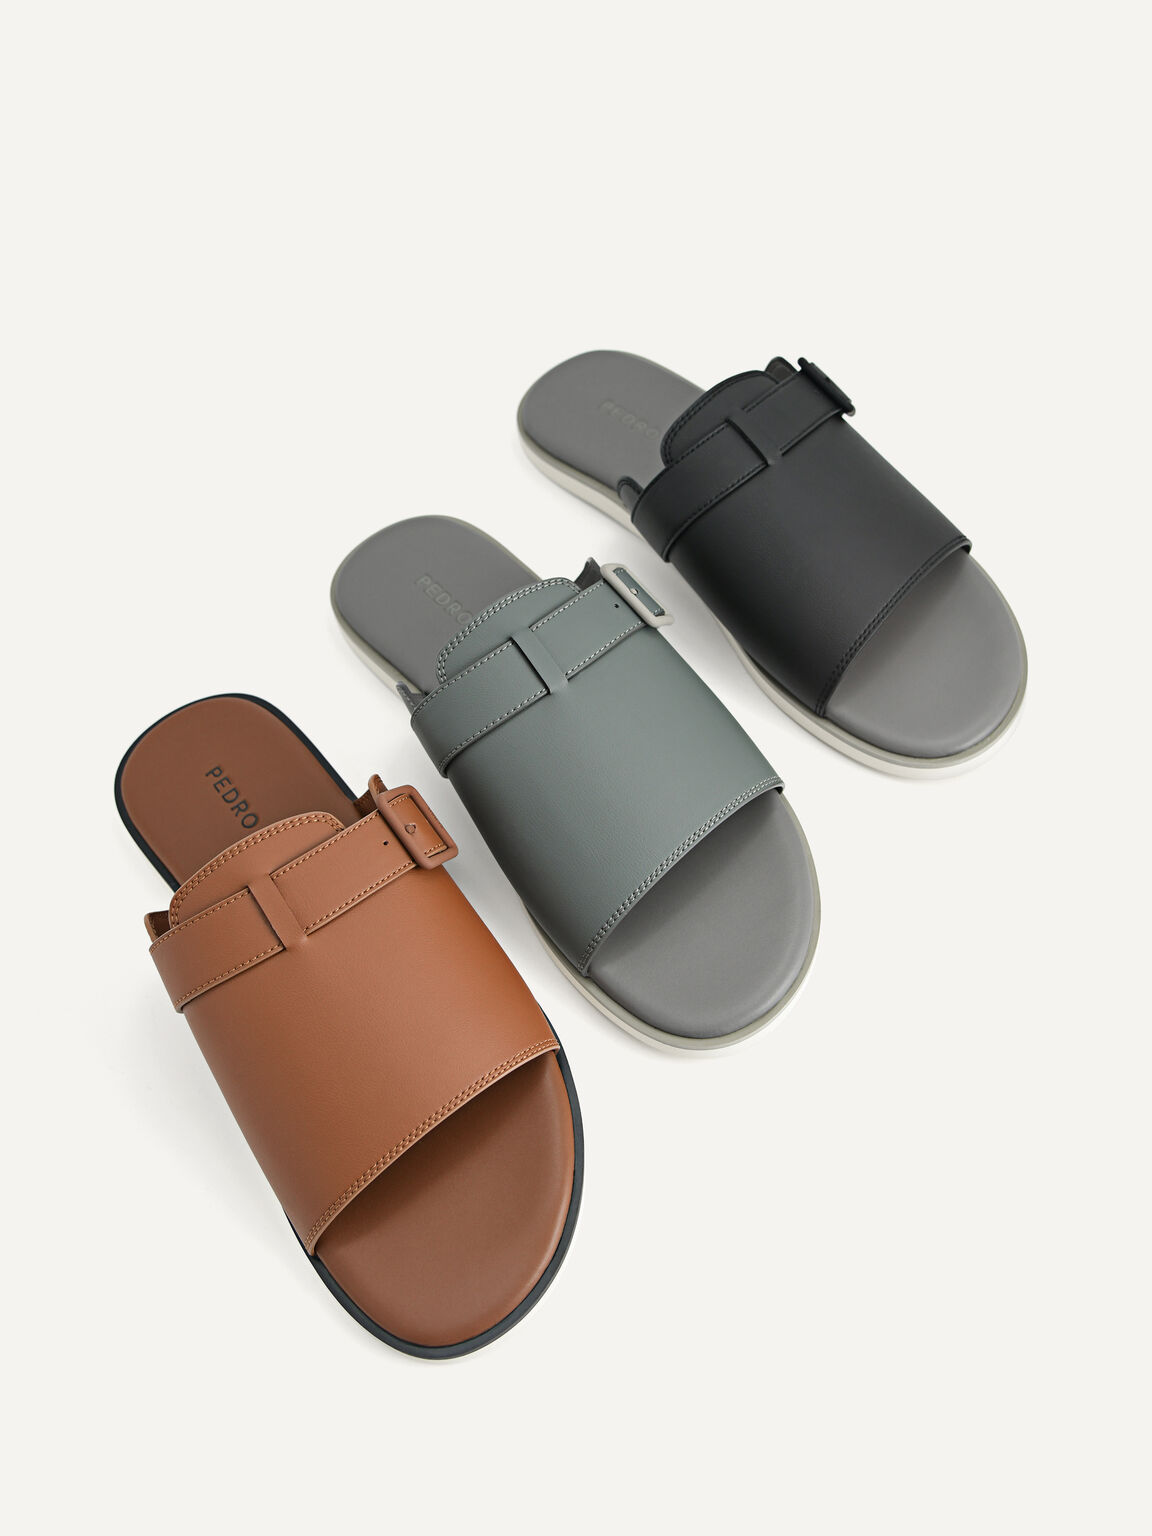 Monochrome Slide Sandals, Dark Grey, hi-res